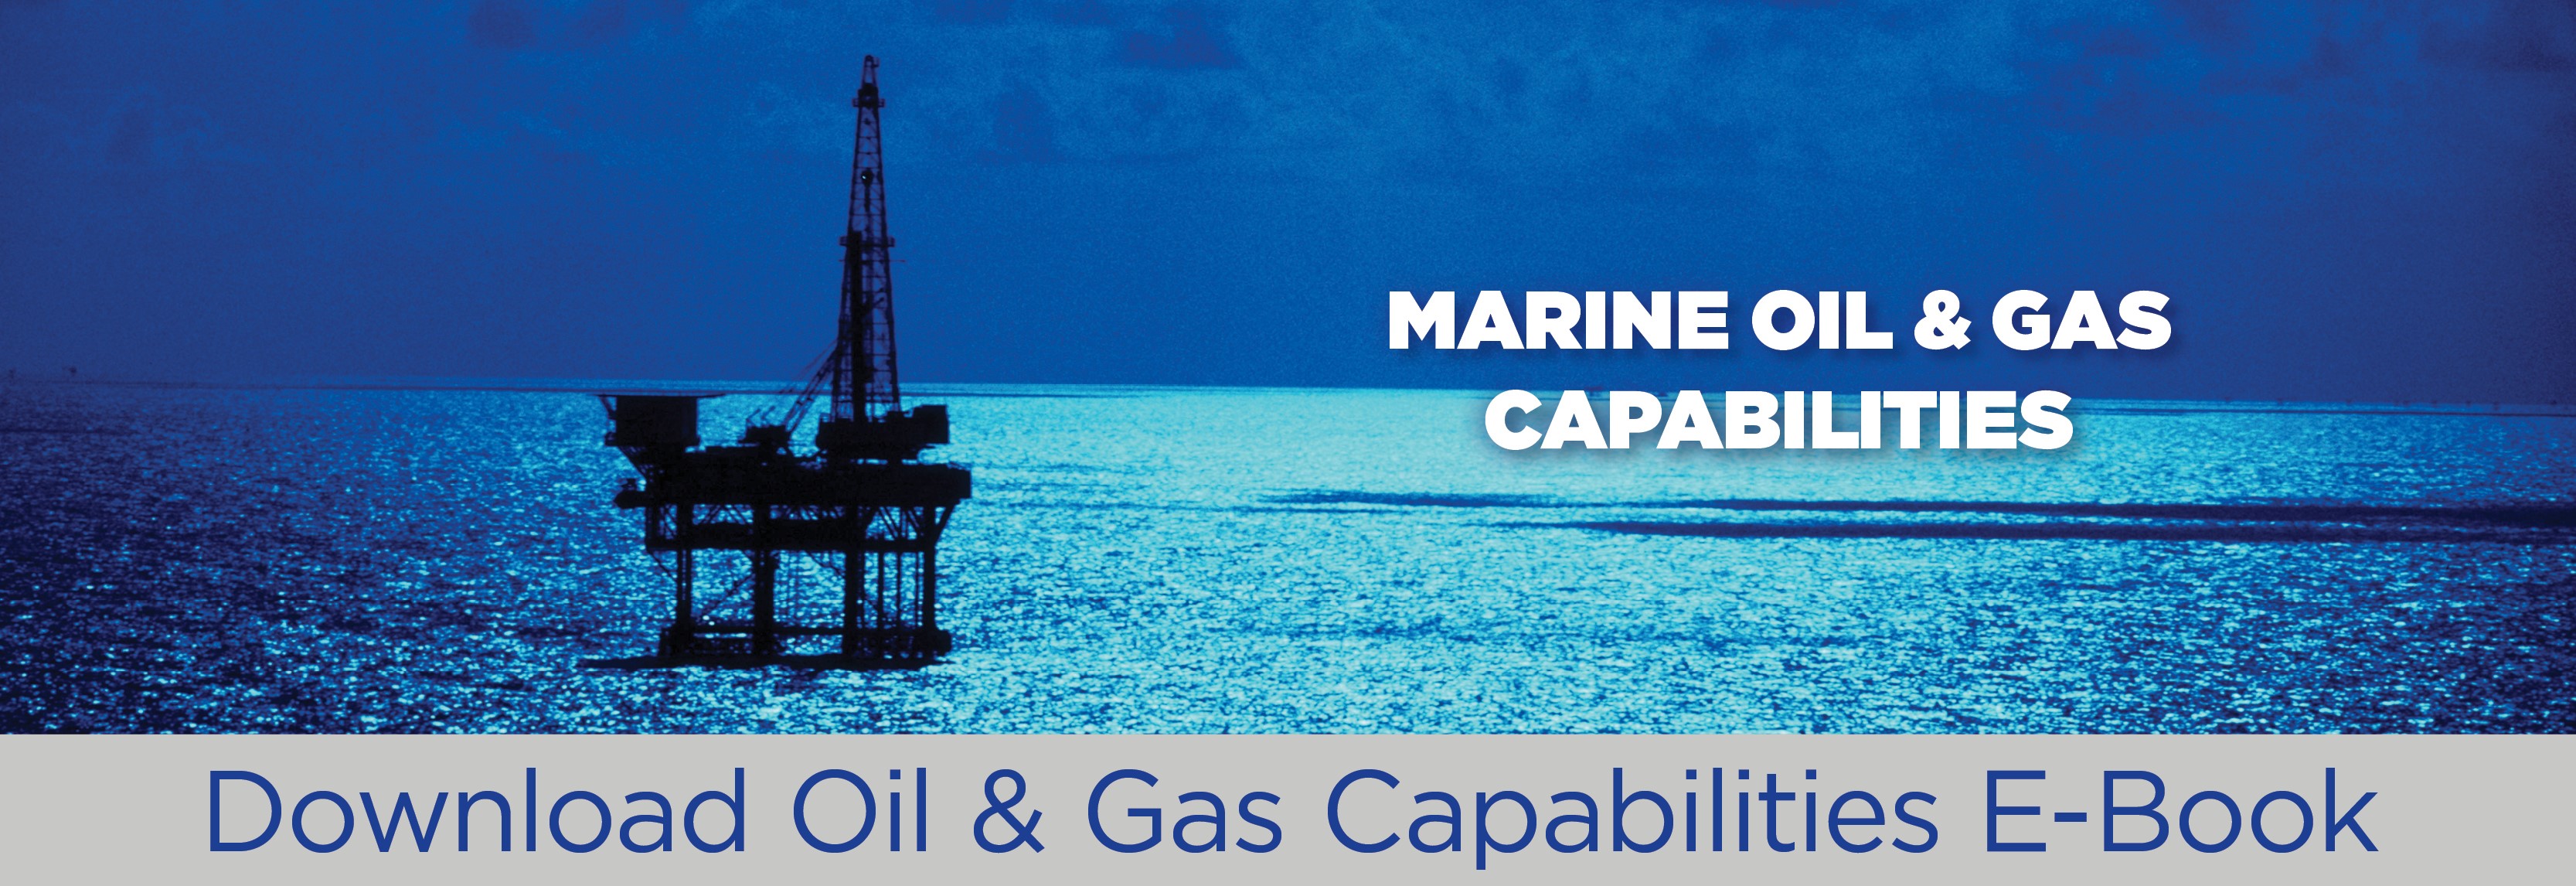 Lander Banner_Oil  & Gas Capabilities_e-Book.jpg